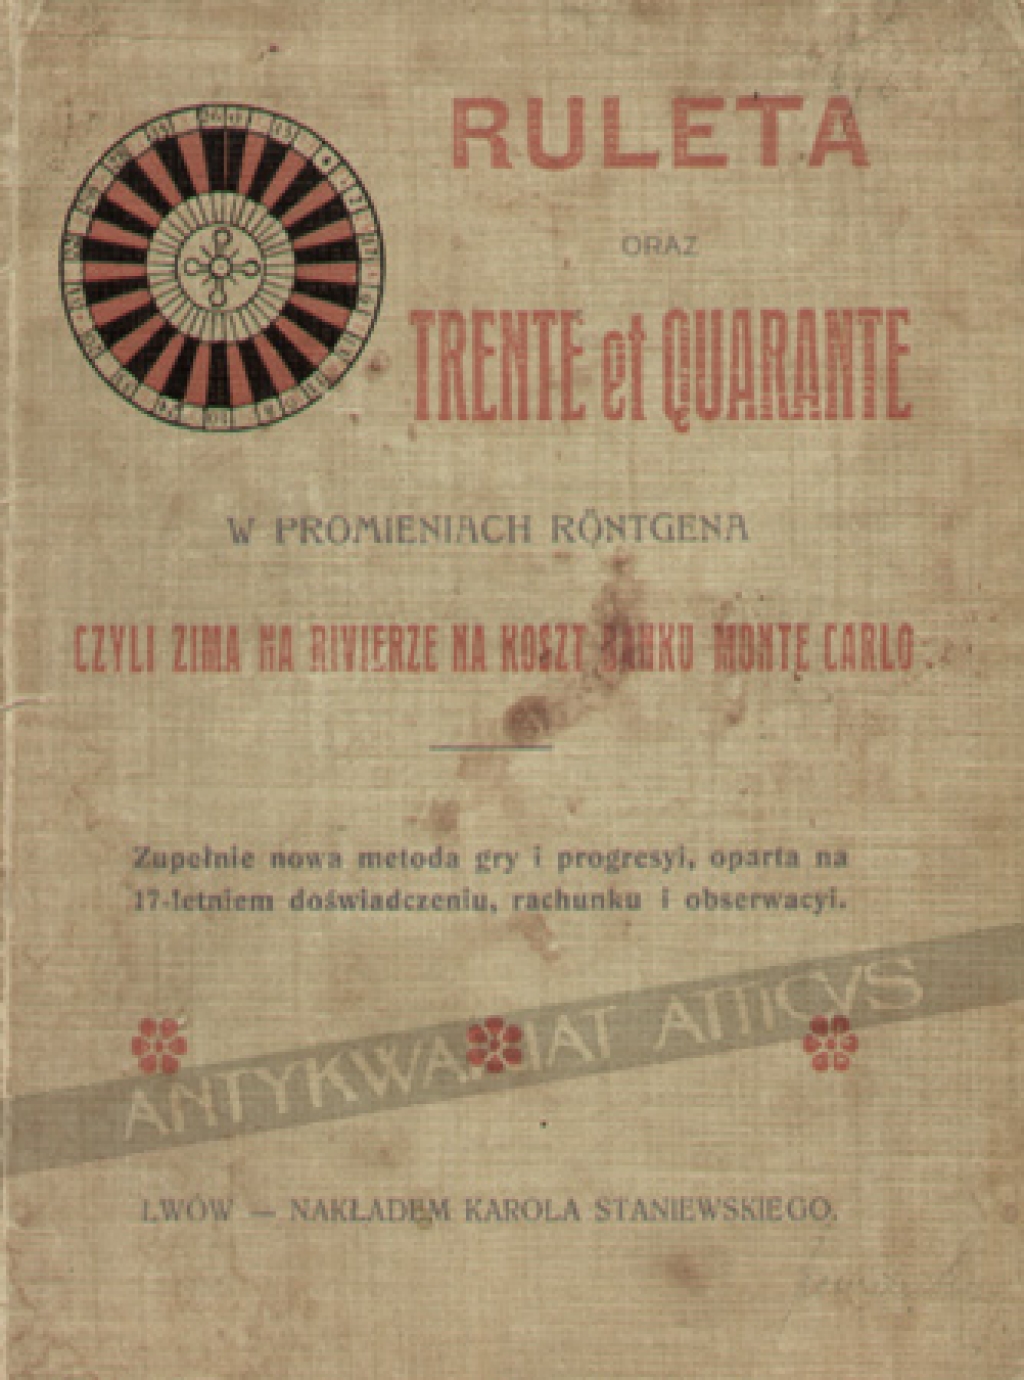 Ruleta oraz Trente et Quarante w promieniach Rontgena, czyli zima na Rivierze na koszt Banku Monte Carlo